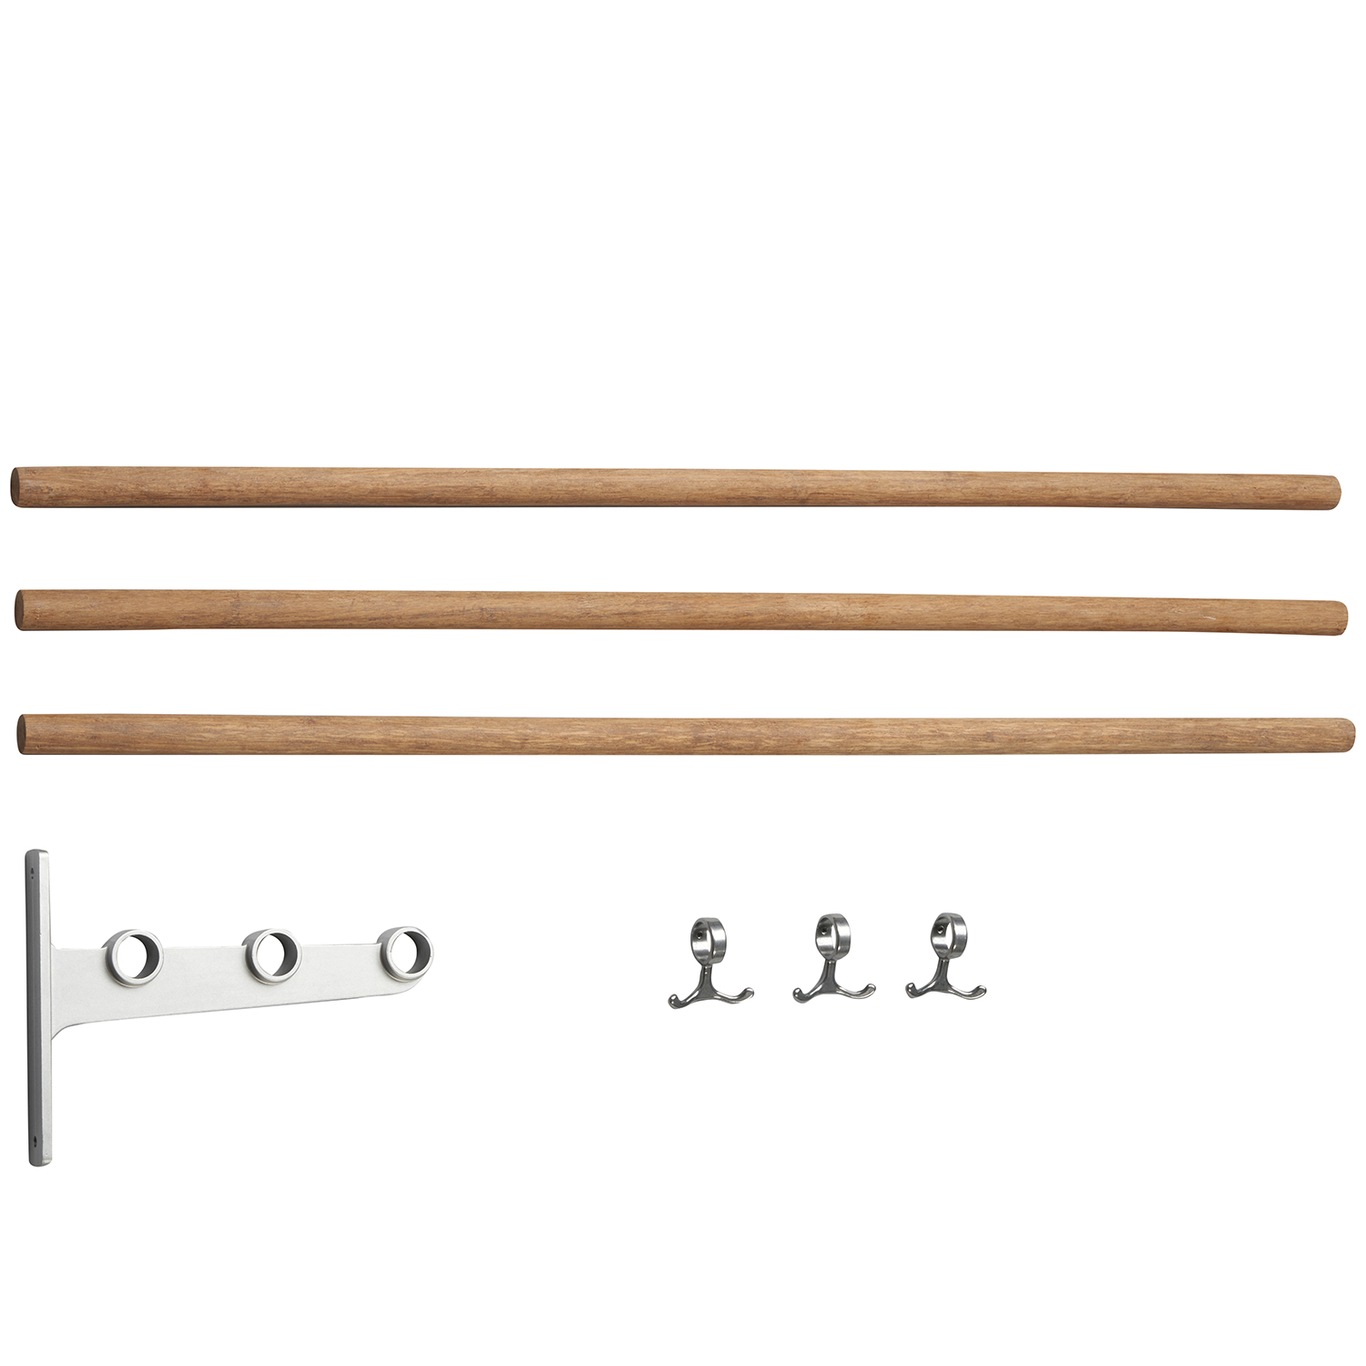 Nostalgi Extension Part For Hat Rack/ Shoe Rack, Aluminium Tilbygningsdel Til Hattehylde / Skohylde, Aluminium Aluminium Bamboo